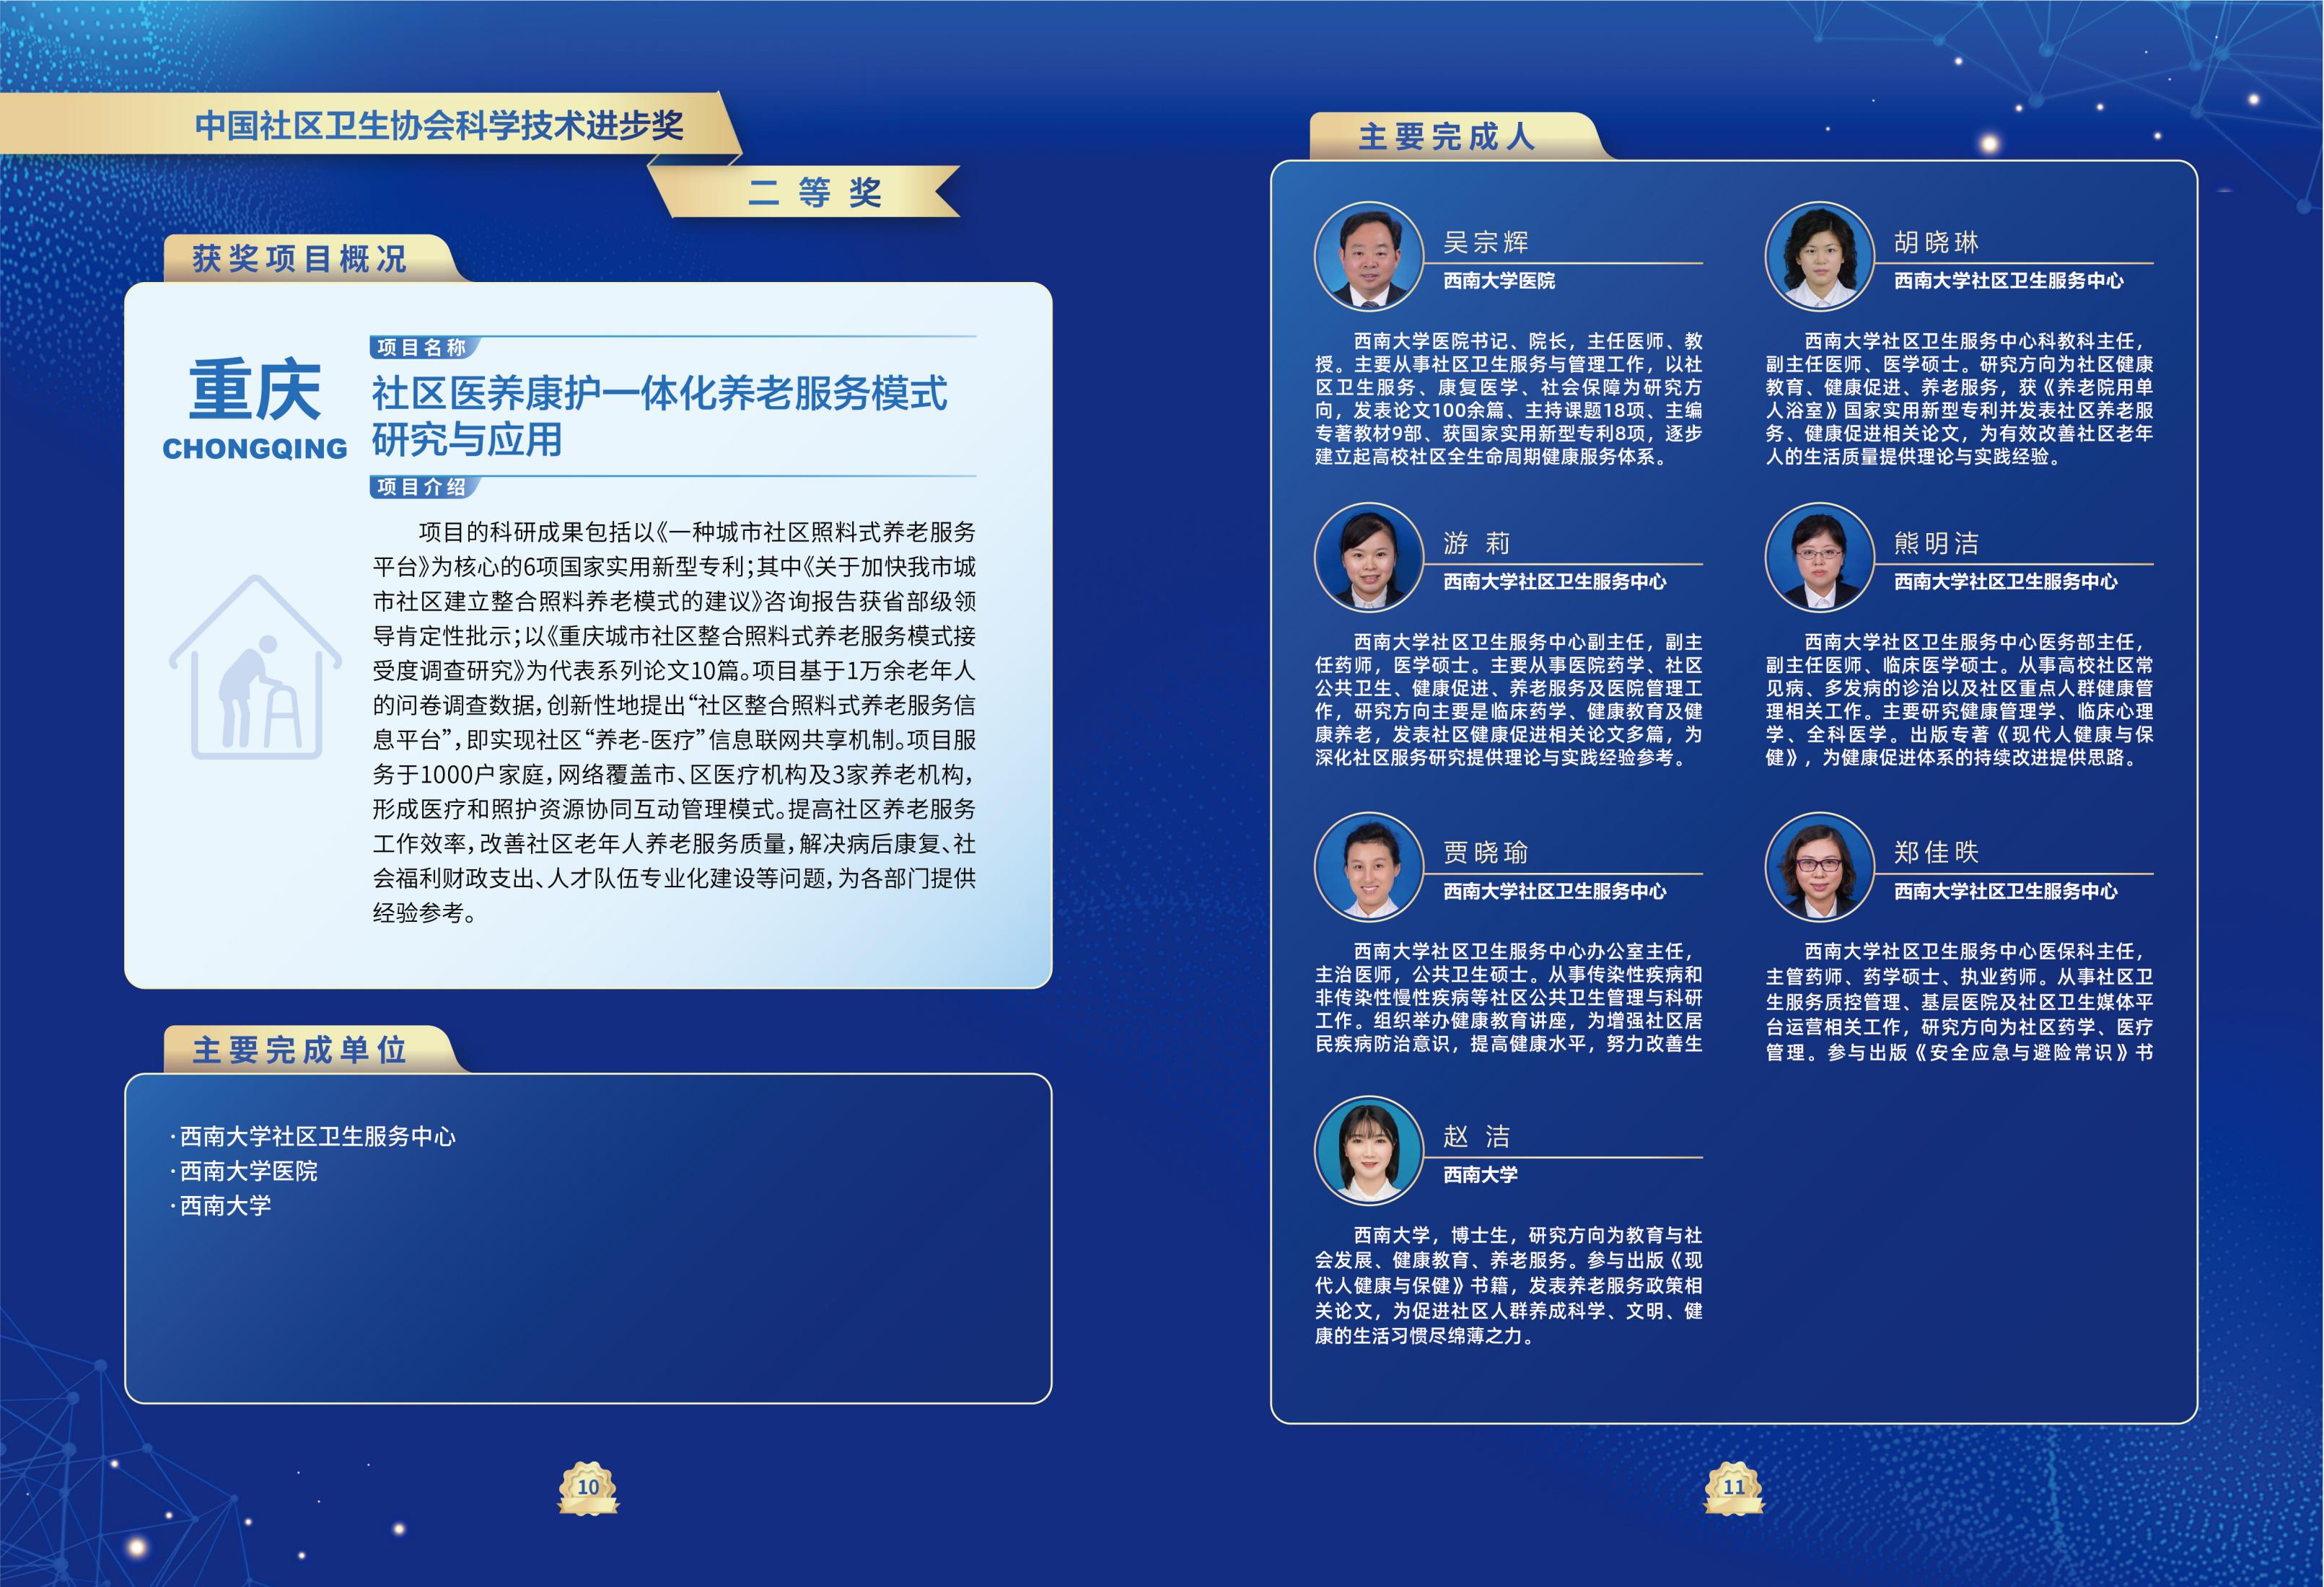 第一届中国社区卫生协会科学技术奖奖励名单_08